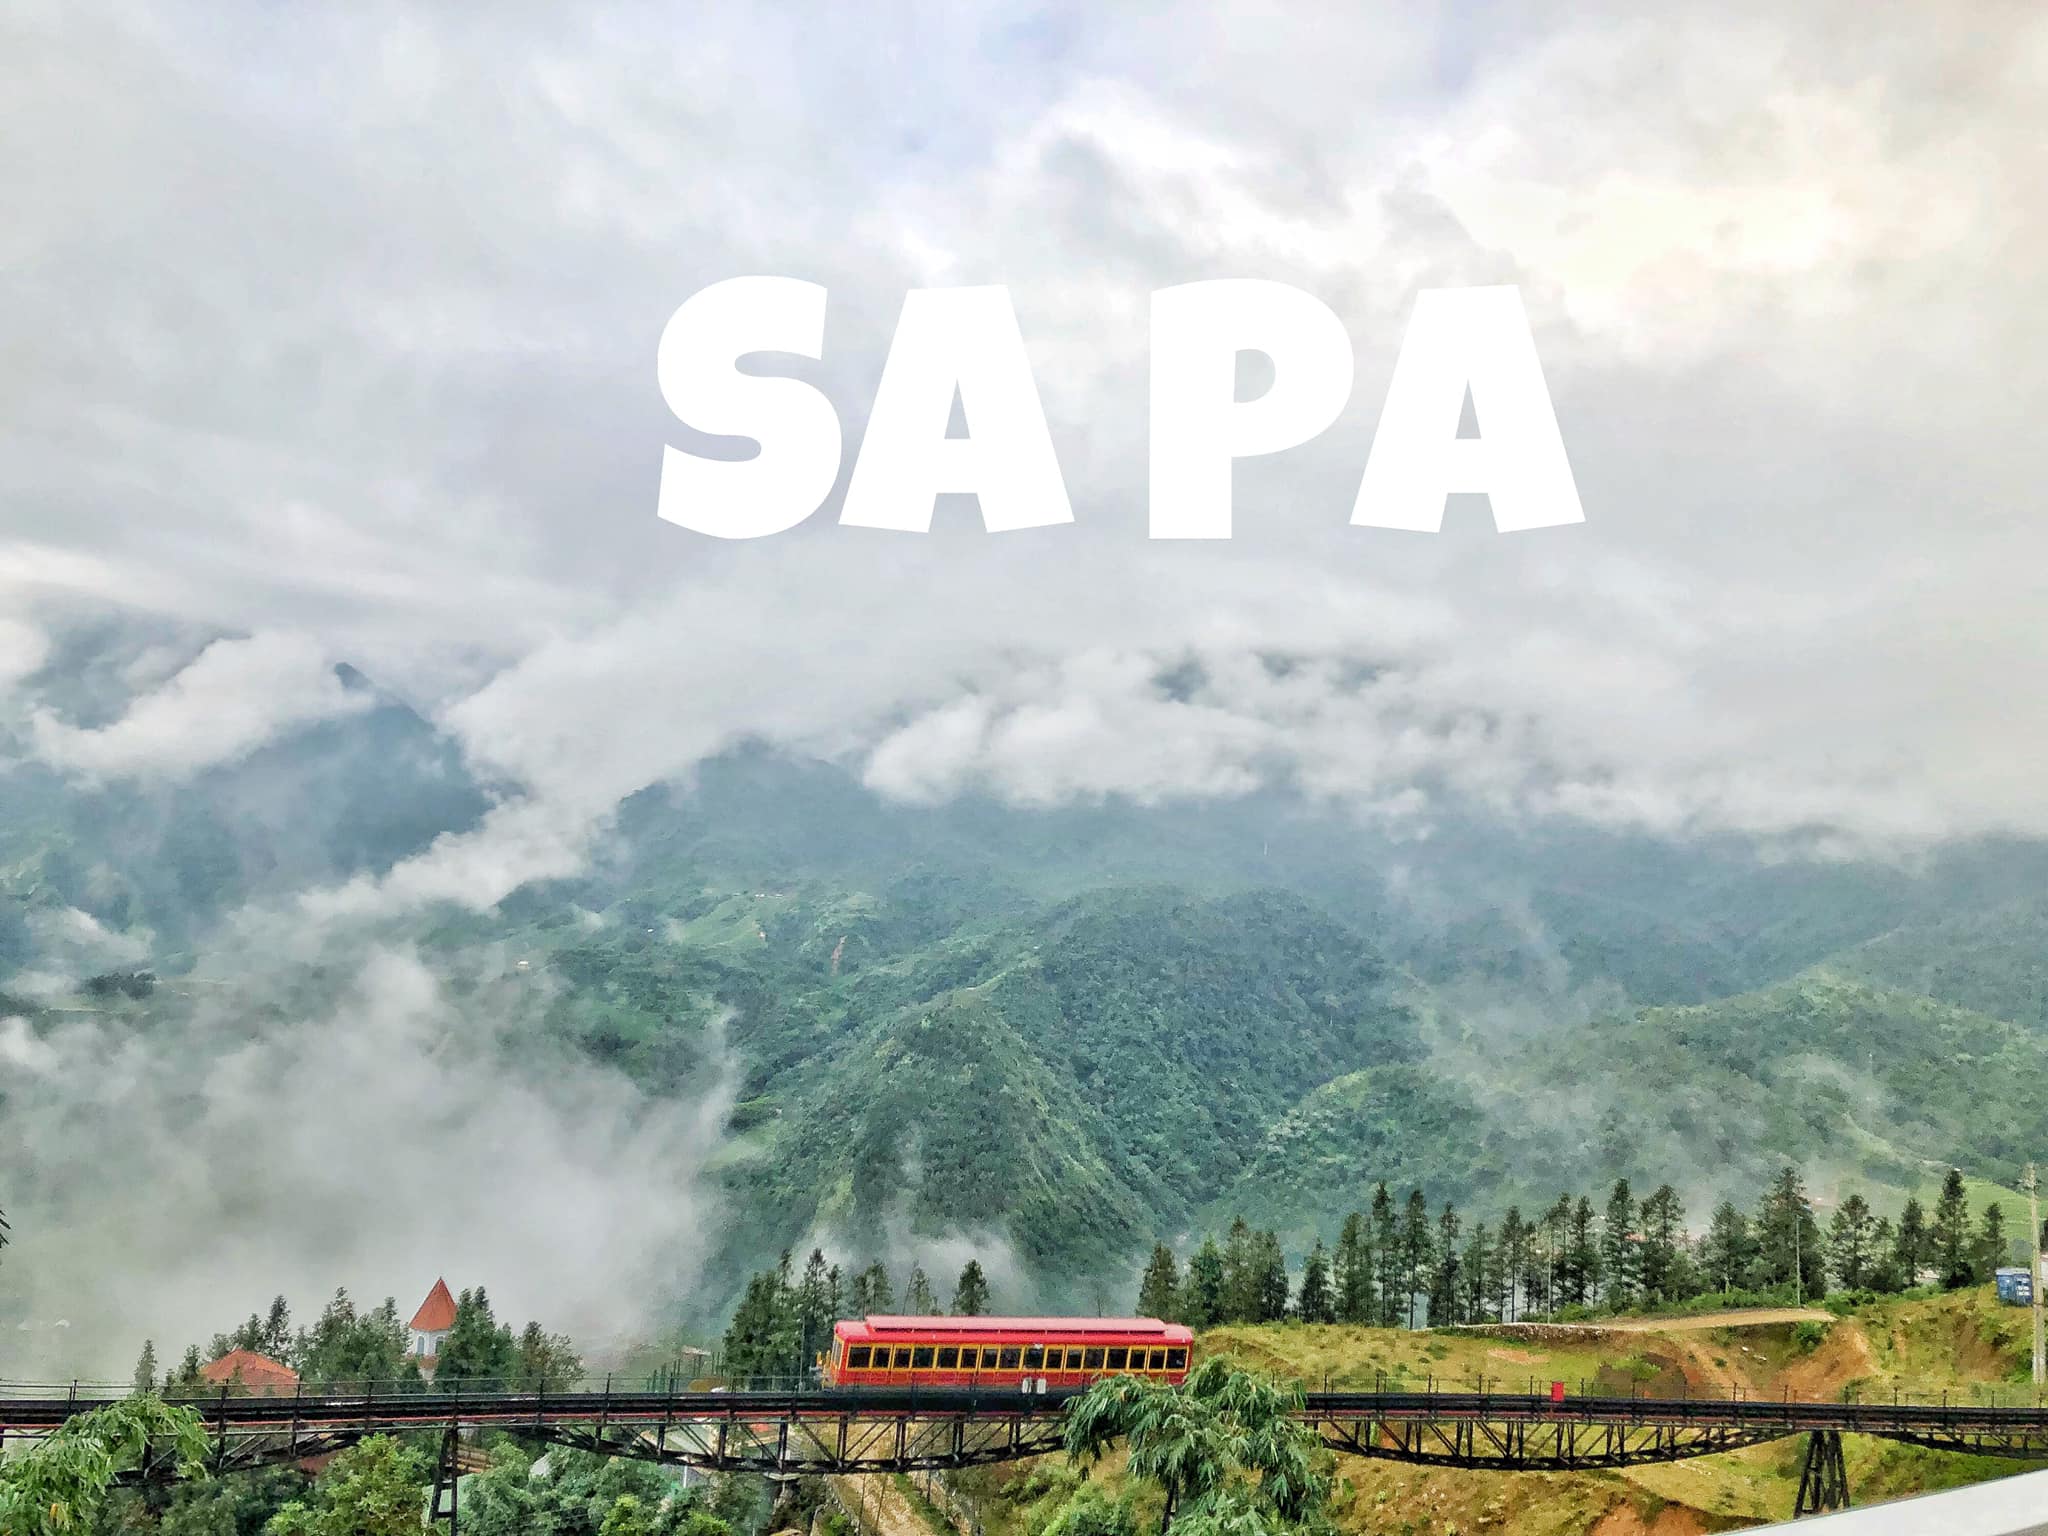 Giá vé các điểm du lịch Sapa tăng nhiều lên so với các năm trước lý do để giúp bà con xây dựng đường vào bản